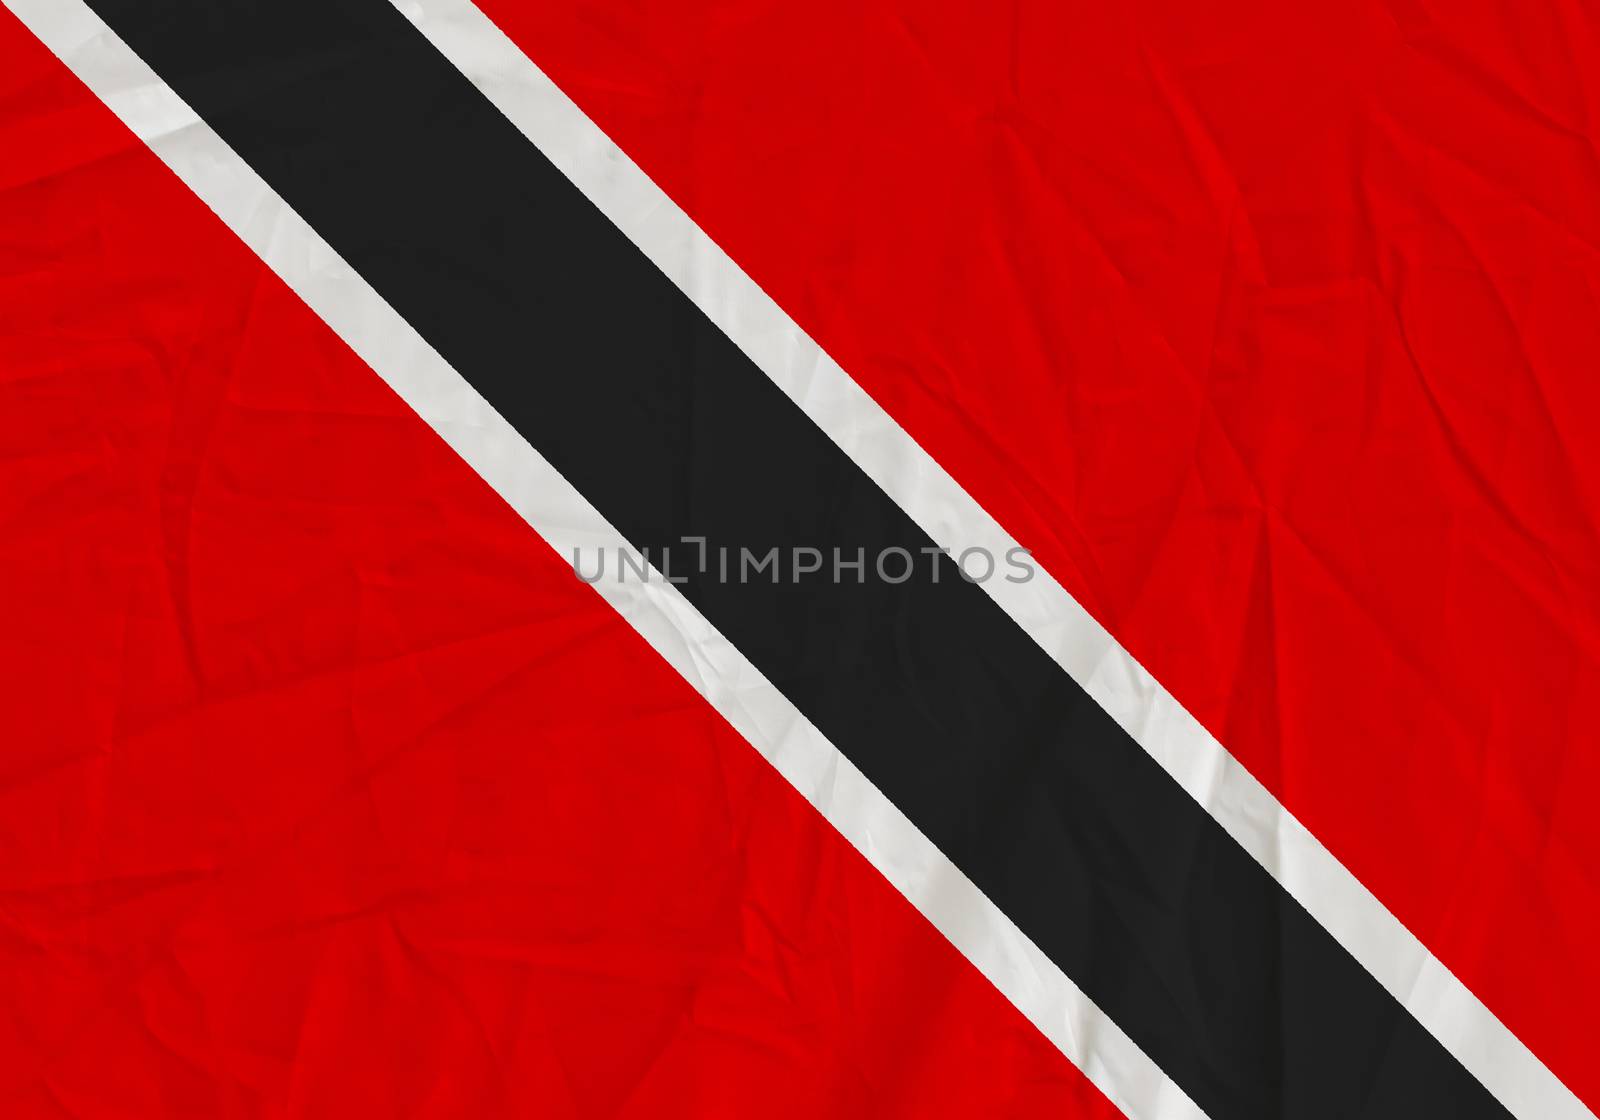 Trinidad and Tobago grunge flag. Patriotic background. National flag of Trinidad and Tobago